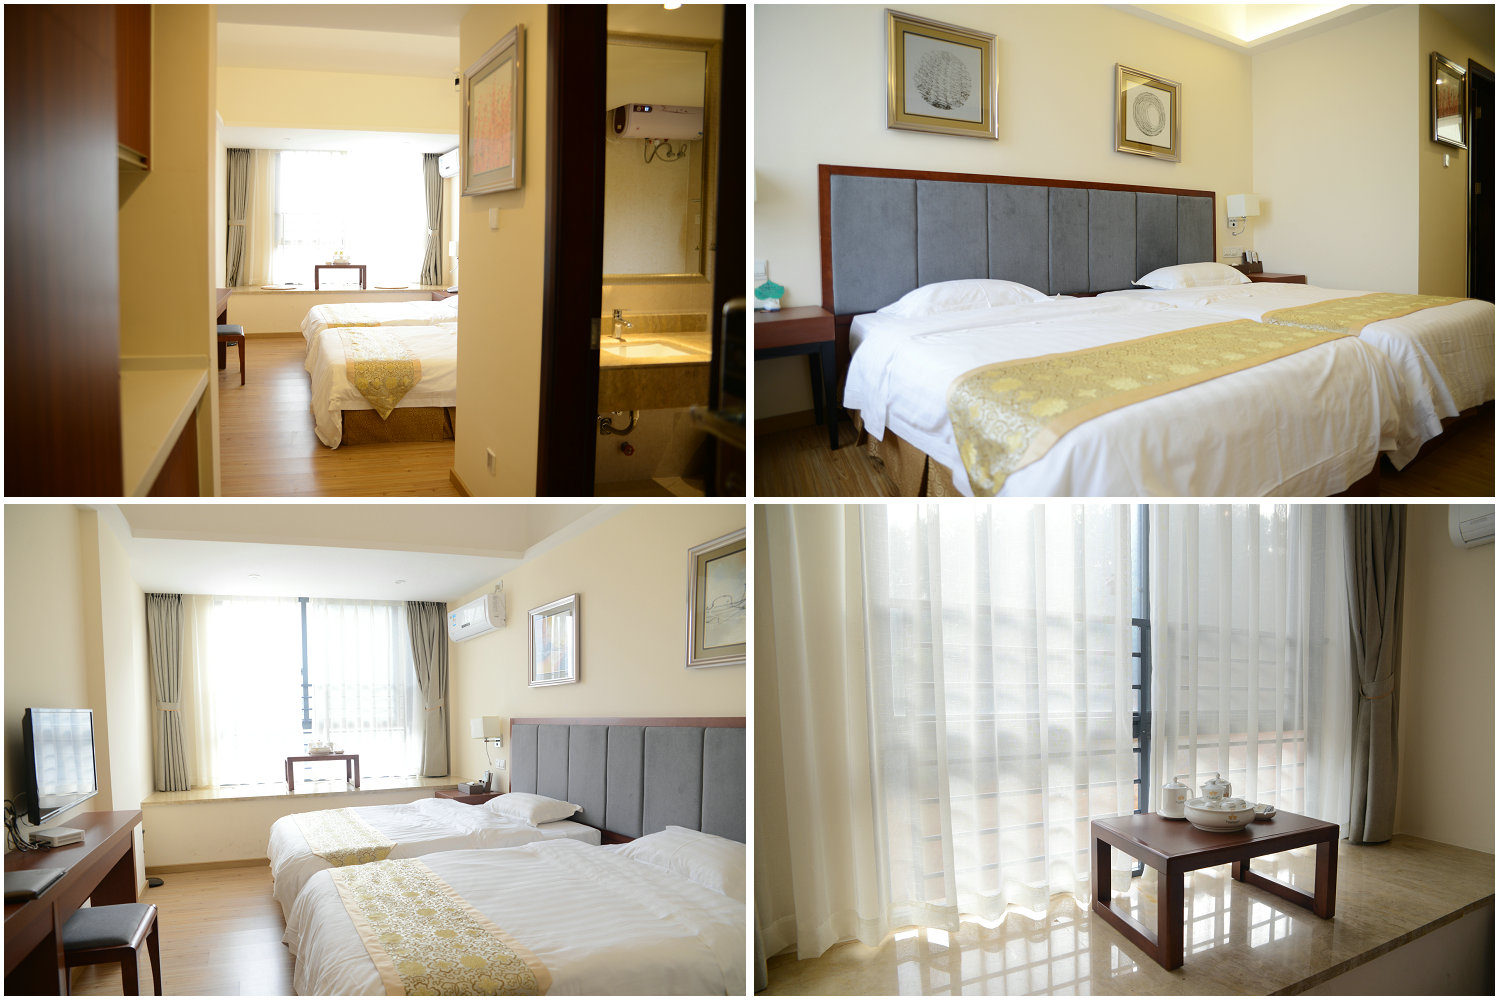 紫莲公馆是按国家五星级标准建造的公寓式酒店,投入运营的有116套